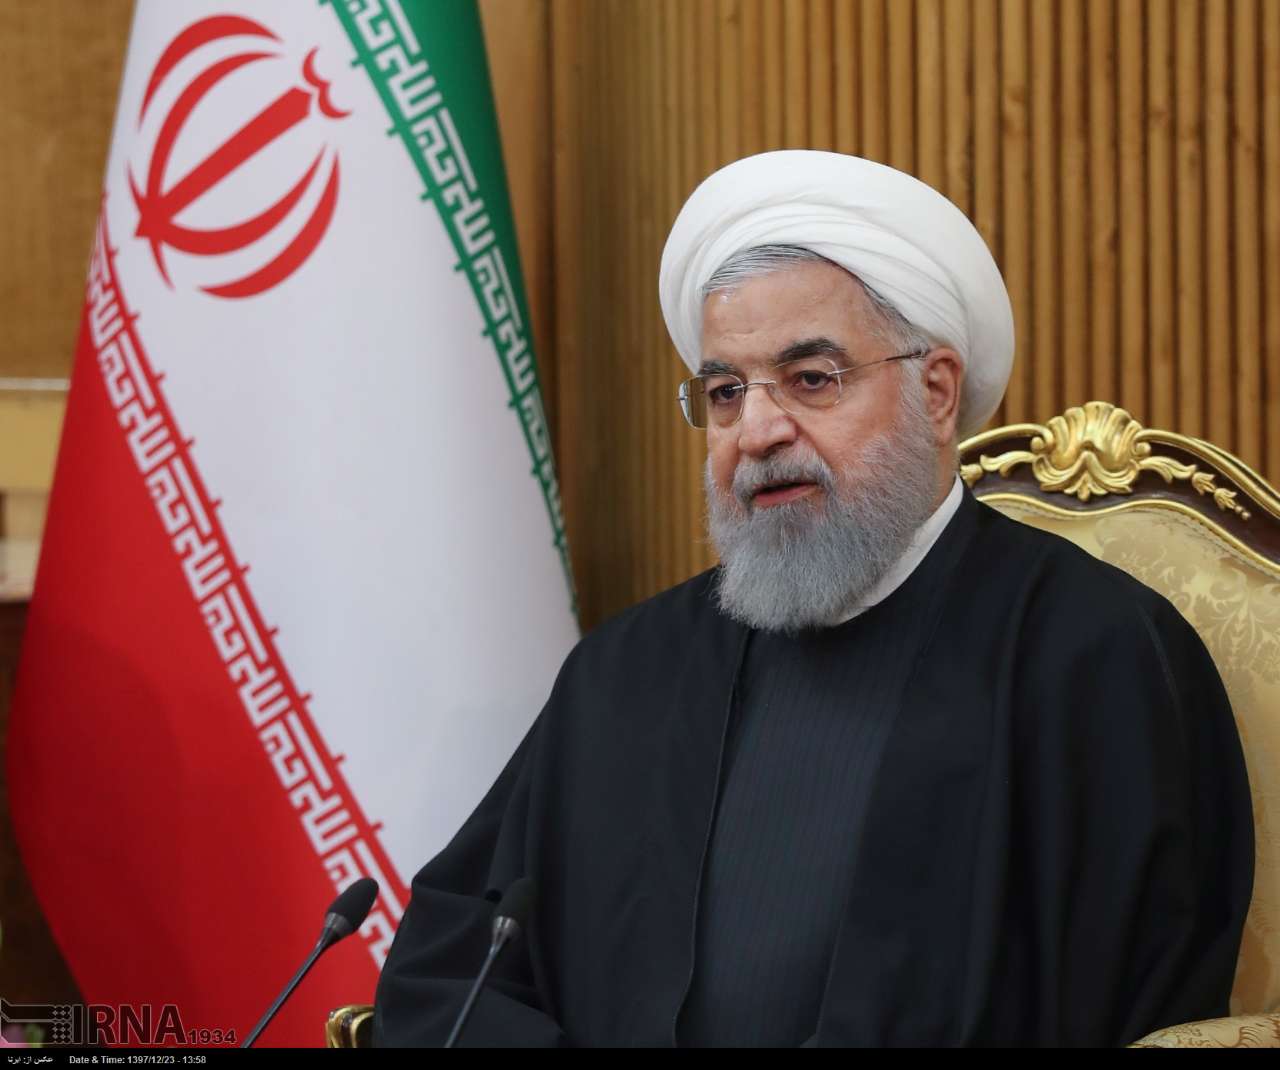 سخنان روحانی در بازگشت از سفر عراق